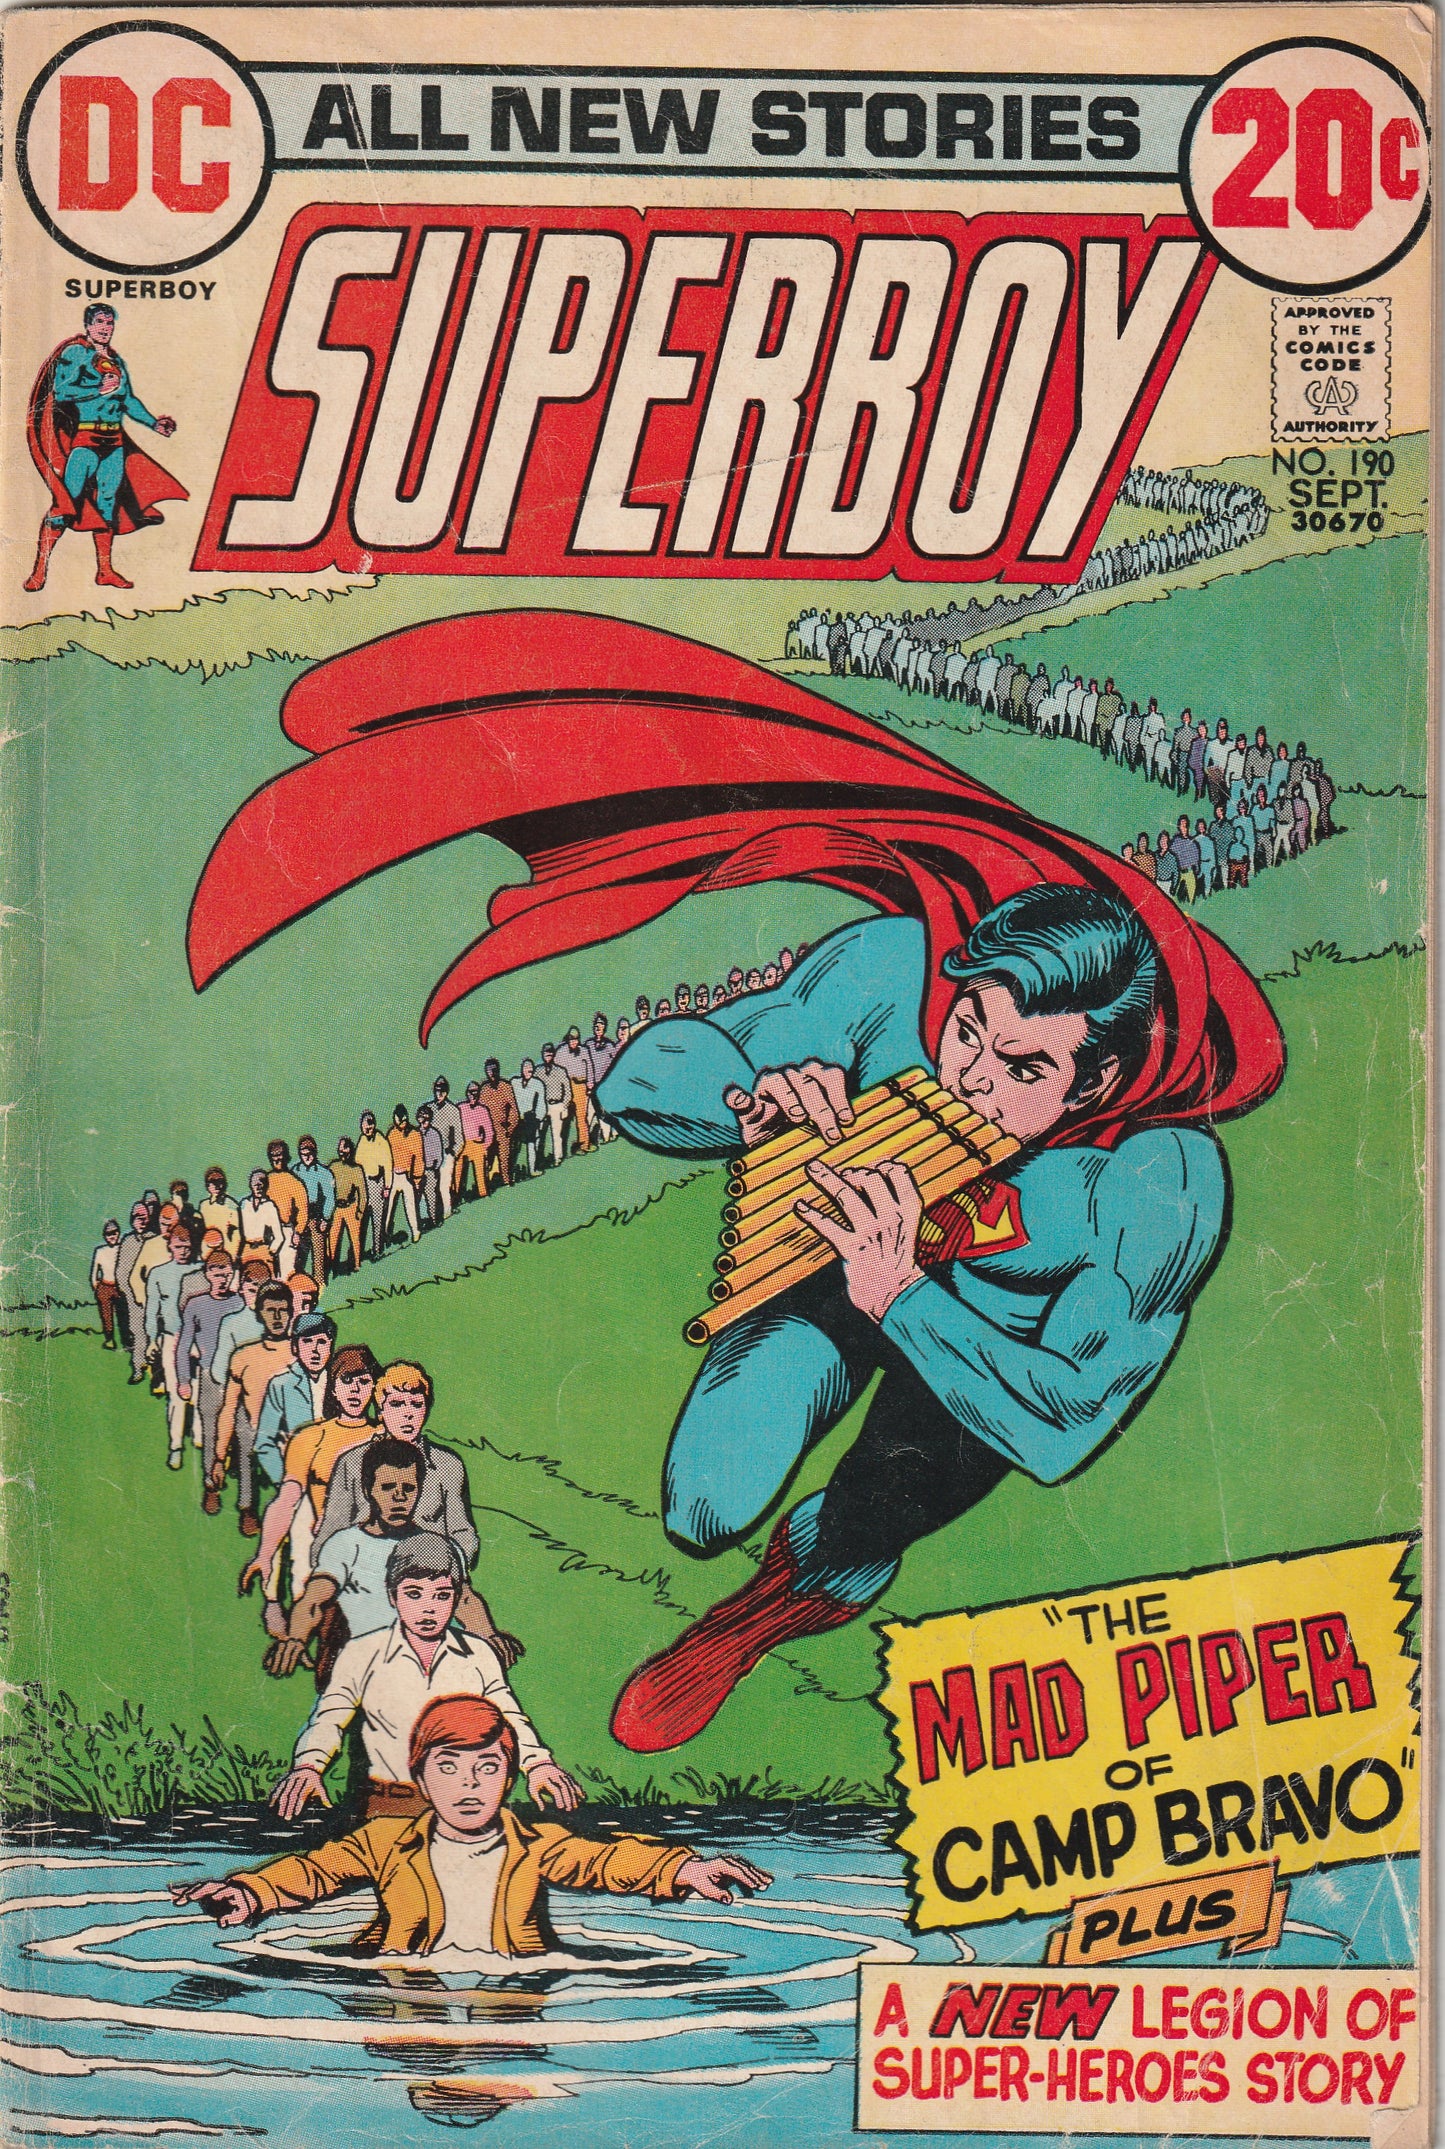 Superboy #190 (1972)